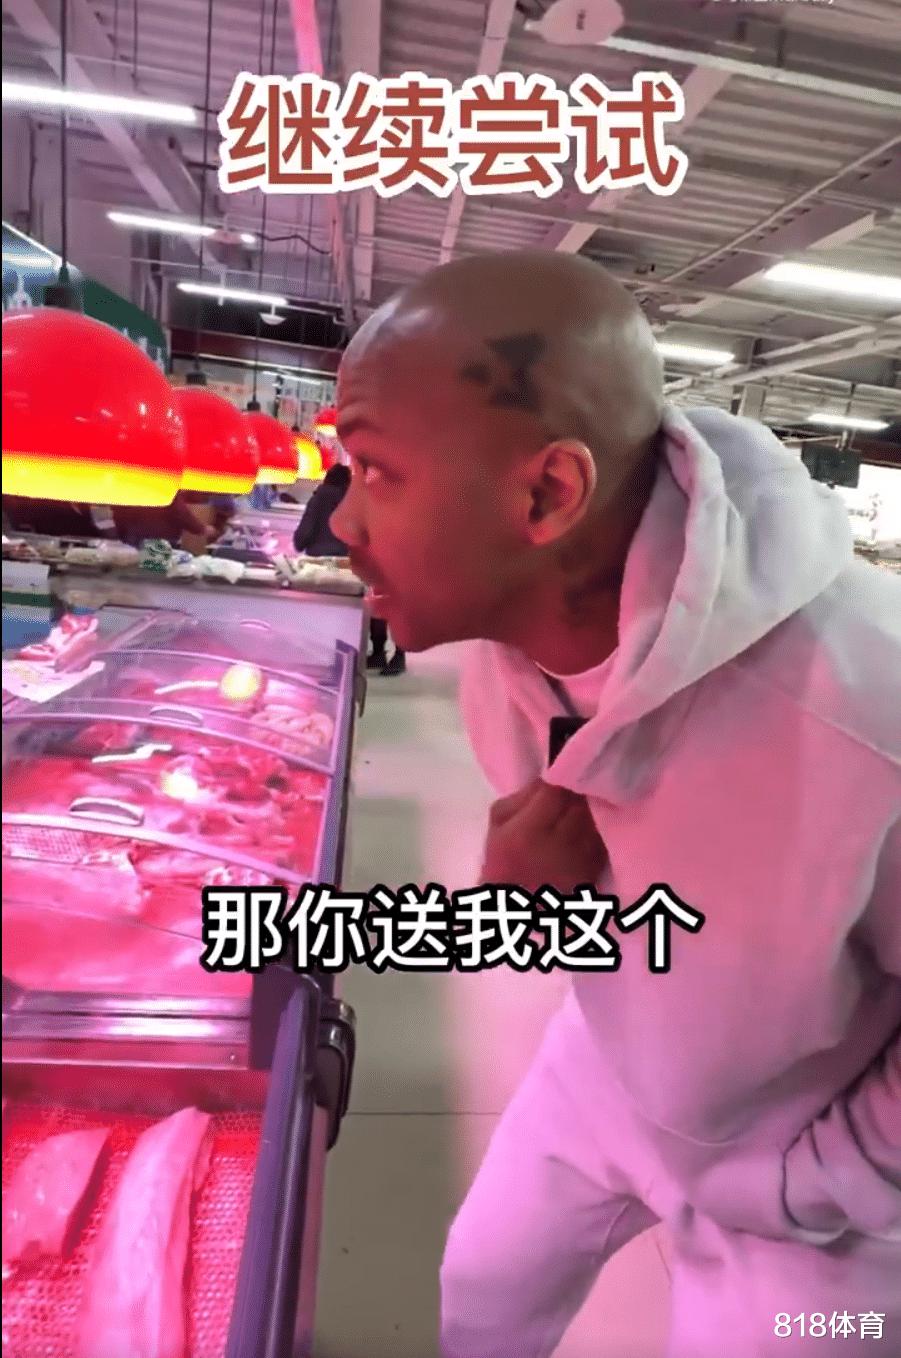 笑喷! 马布里北京菜市场买菜, 1块猪肉24块3砍价被老板拒绝: 便宜不了(9)